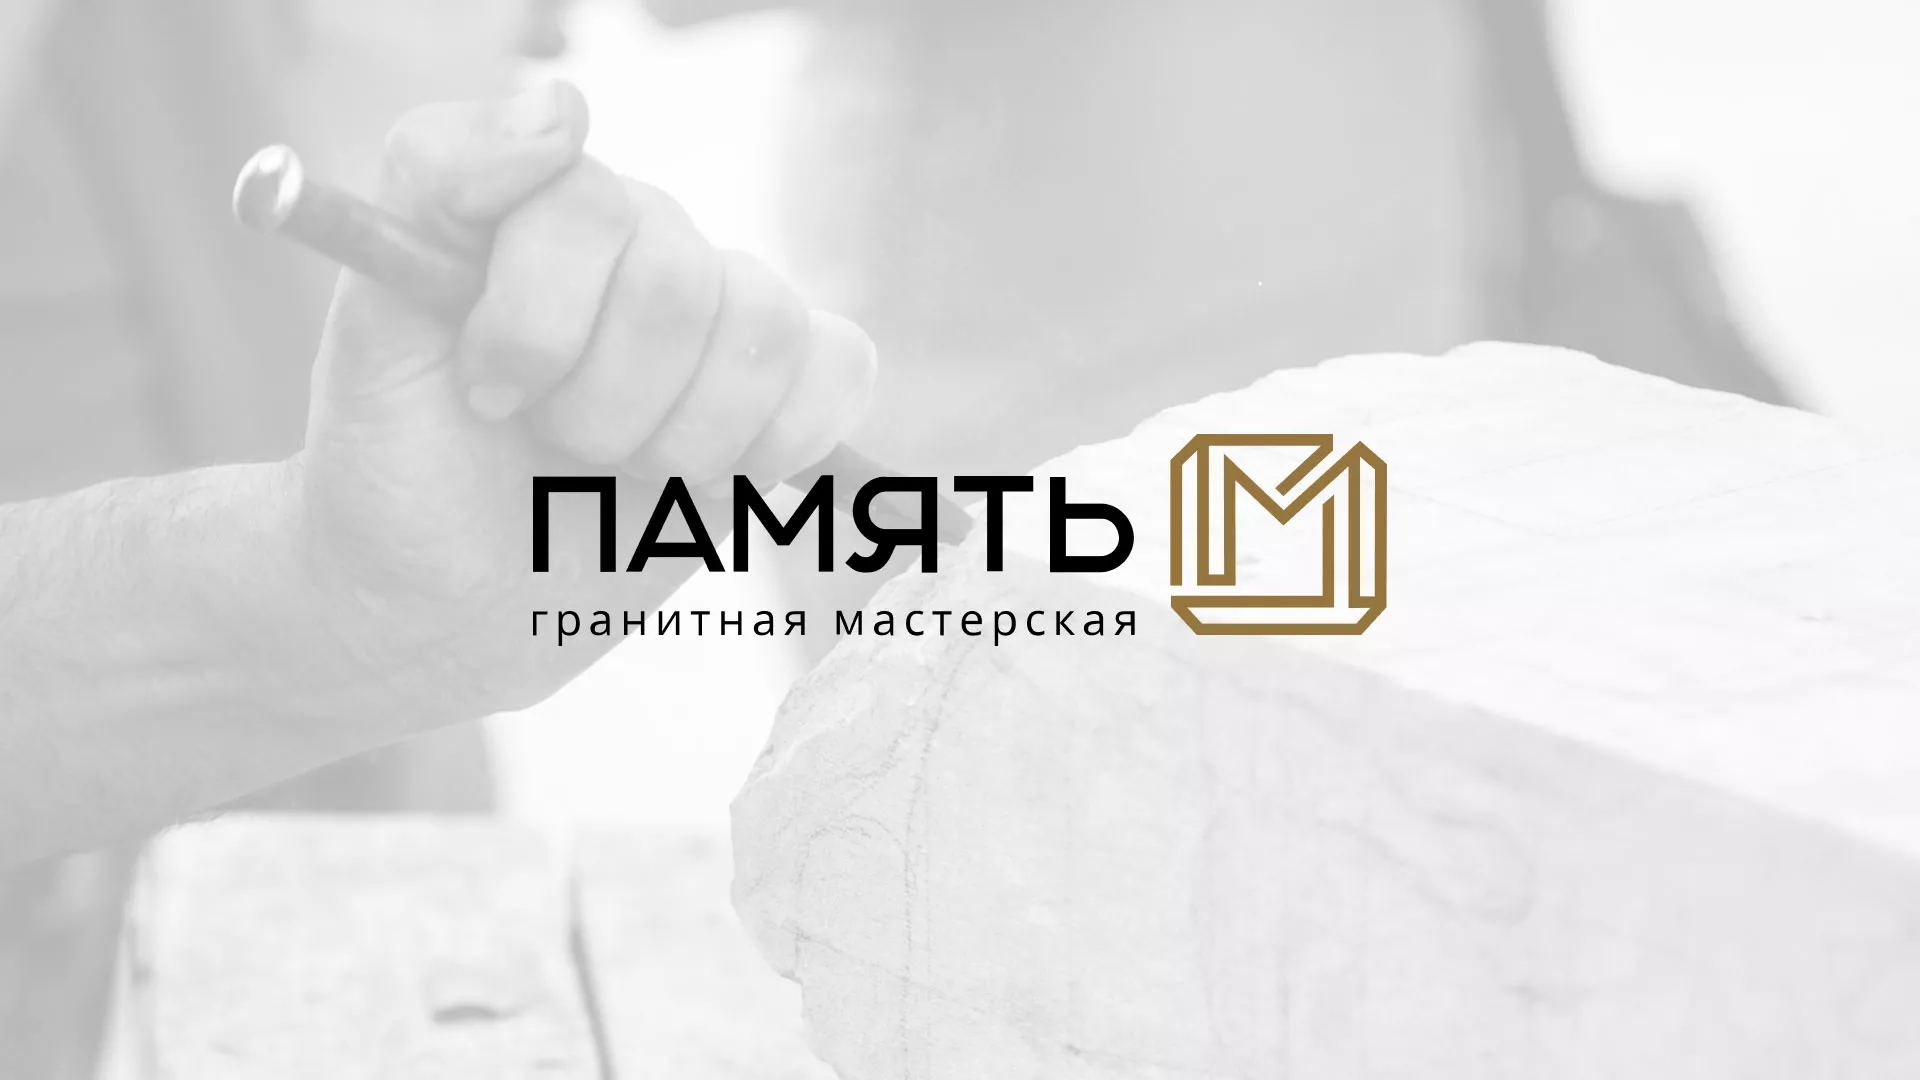 Разработка логотипа и сайта компании «Память-М» в Малоархангельске